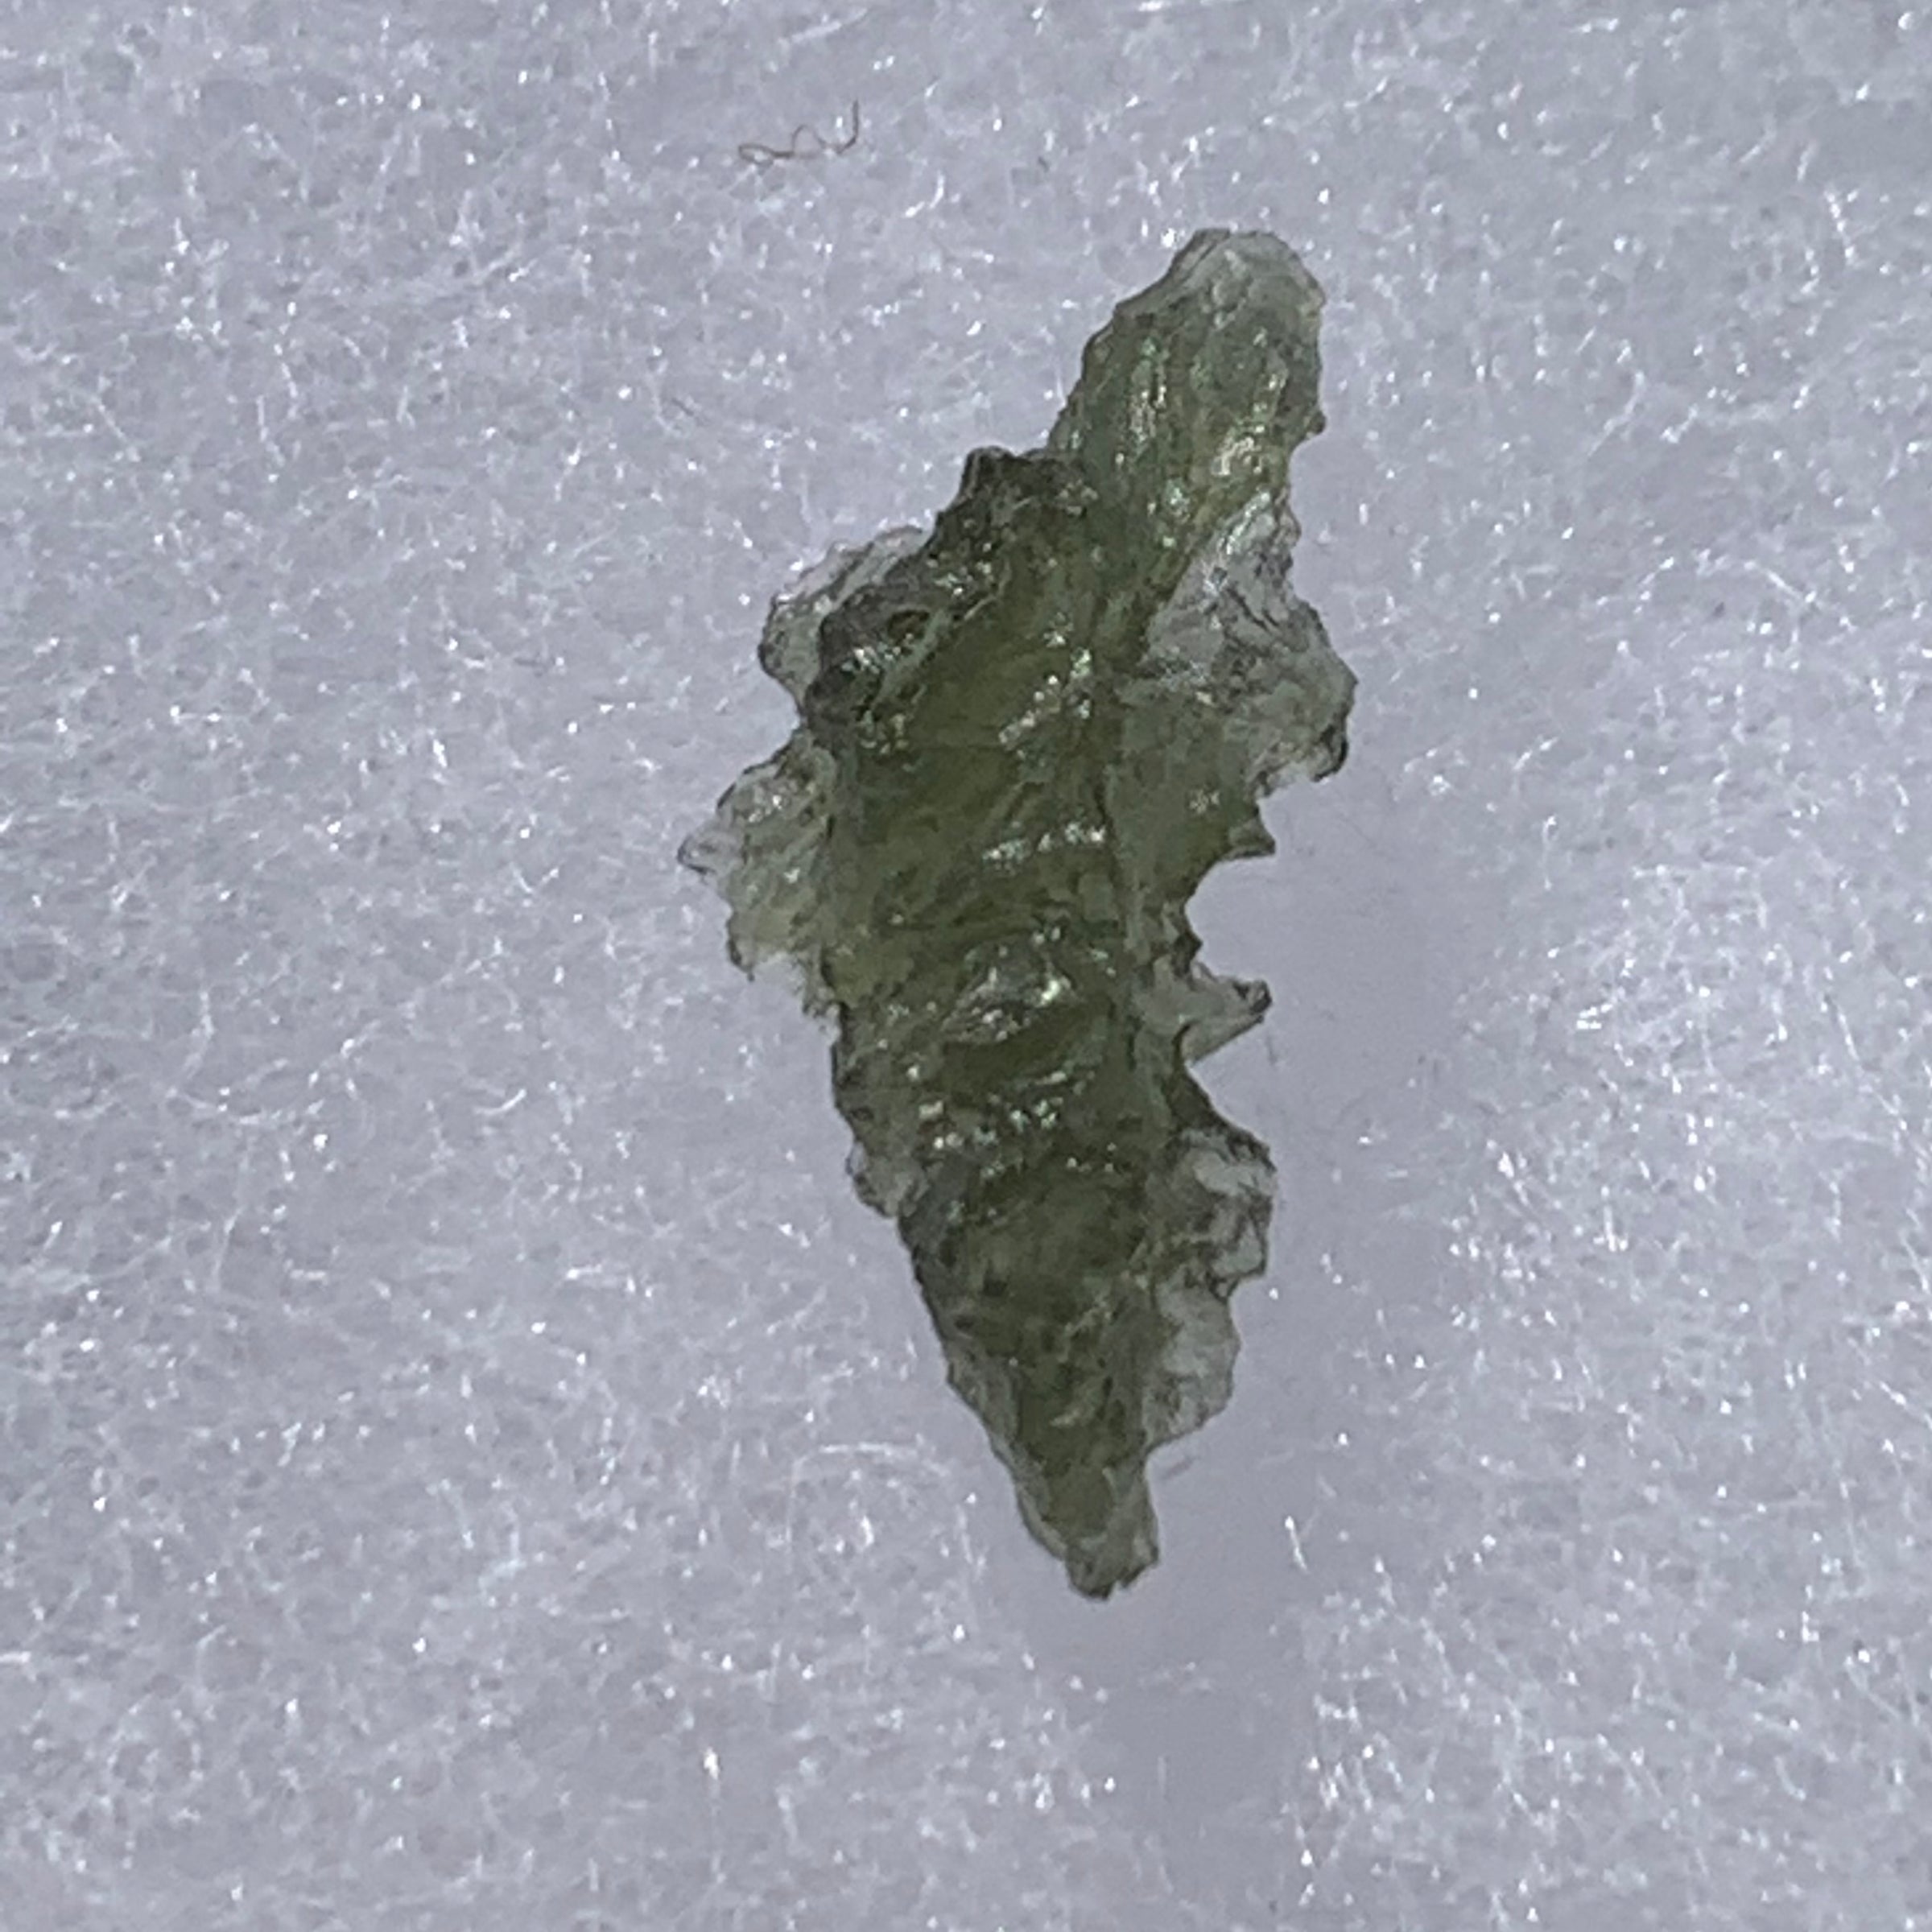 Besednice Moldavite 1.0 grams